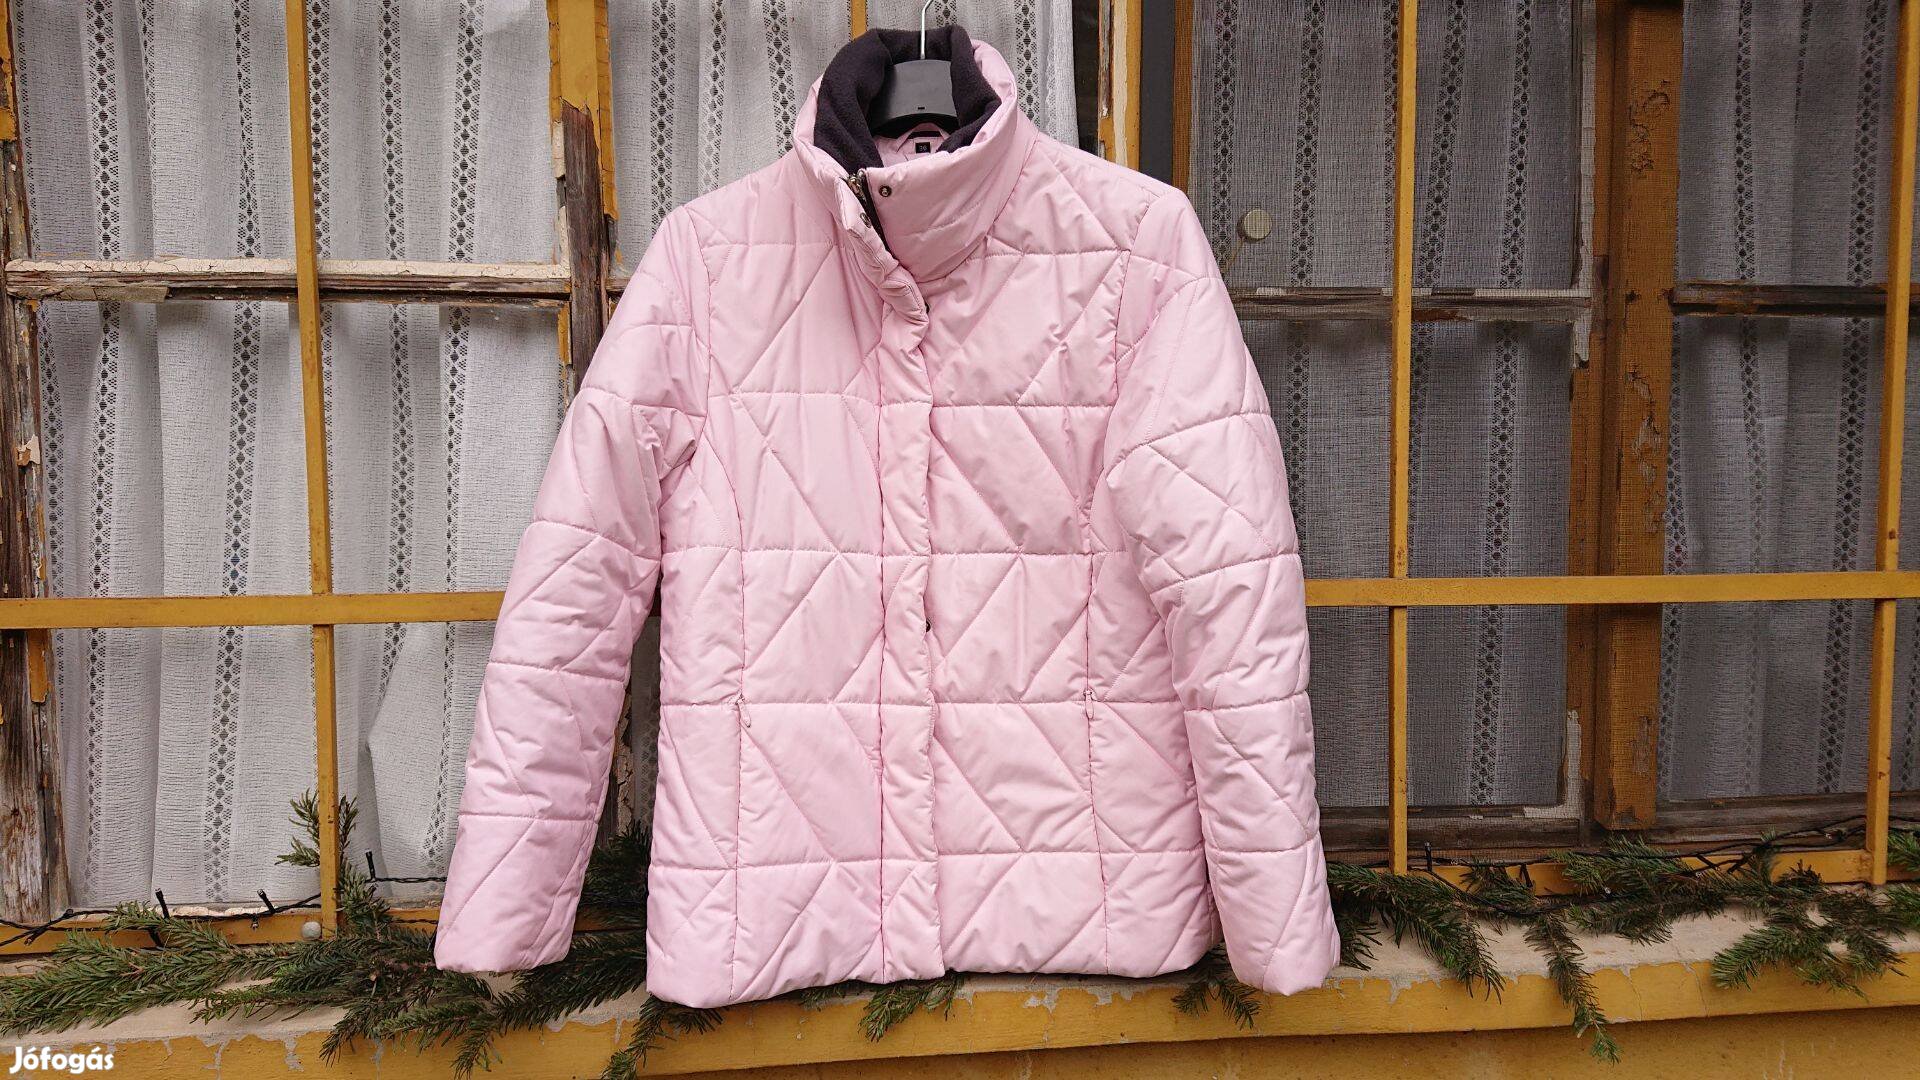 Canyon rózsaszín 36-os női sport dzseki, téli dzseki